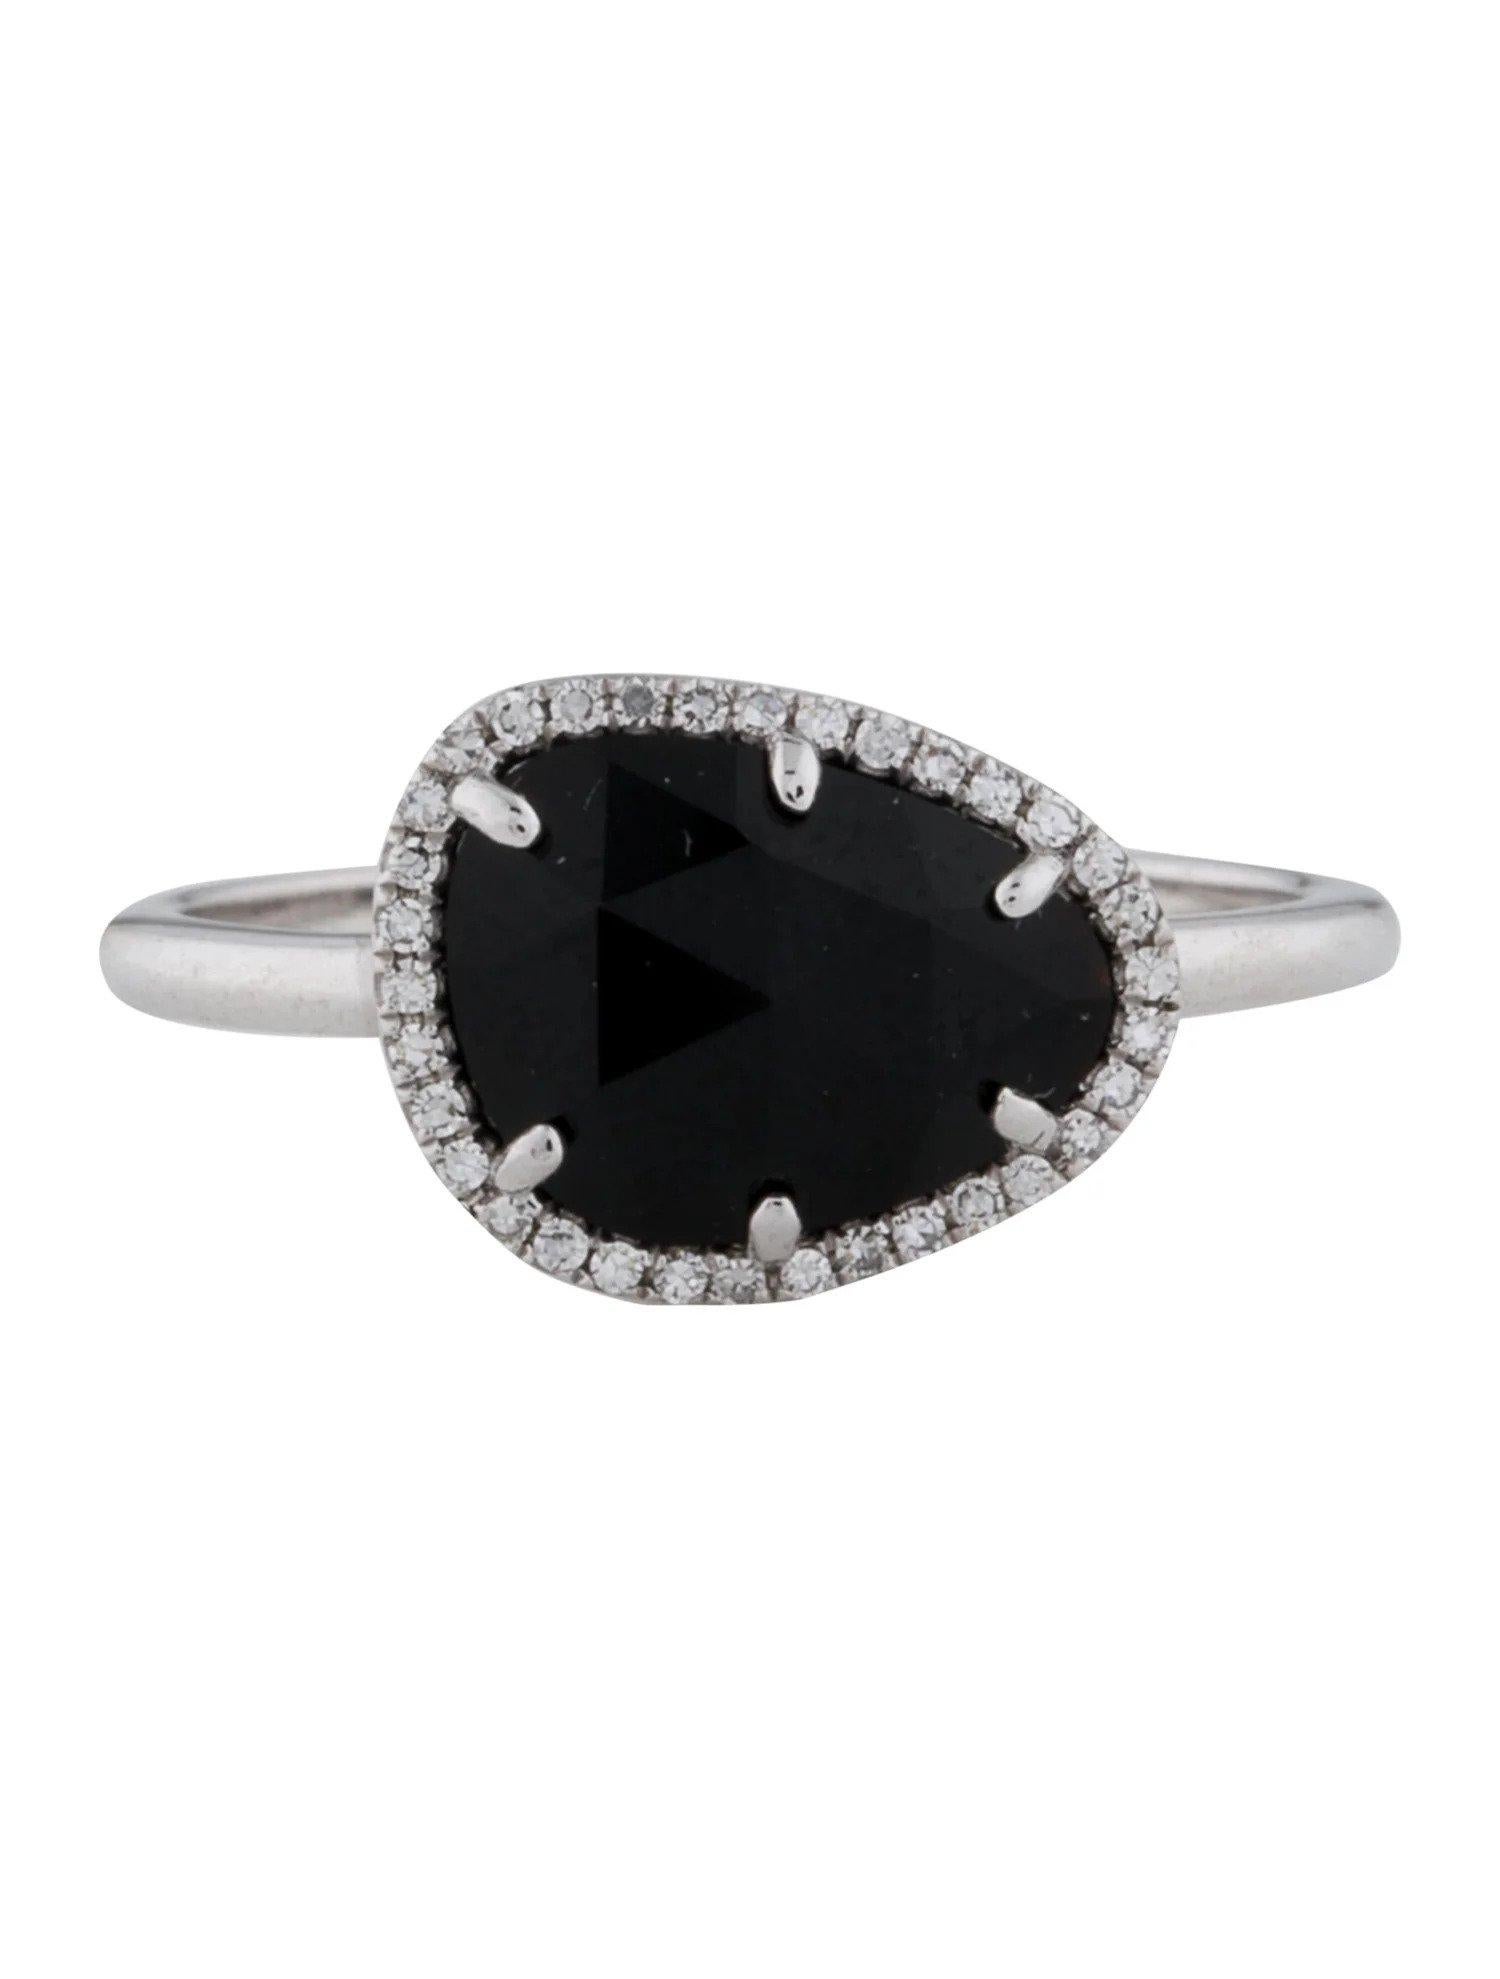 Dieser Ring aus Onyx und Diamanten ist ein atemberaubendes und zeitloses Accessoire, das jedem Outfit einen Hauch von Glamour und Raffinesse verleihen kann. 

Dieser Ring besteht aus einem 1,56 Karat Onyx (12 x 9 MM) mit einem Diamant-Halo, der aus